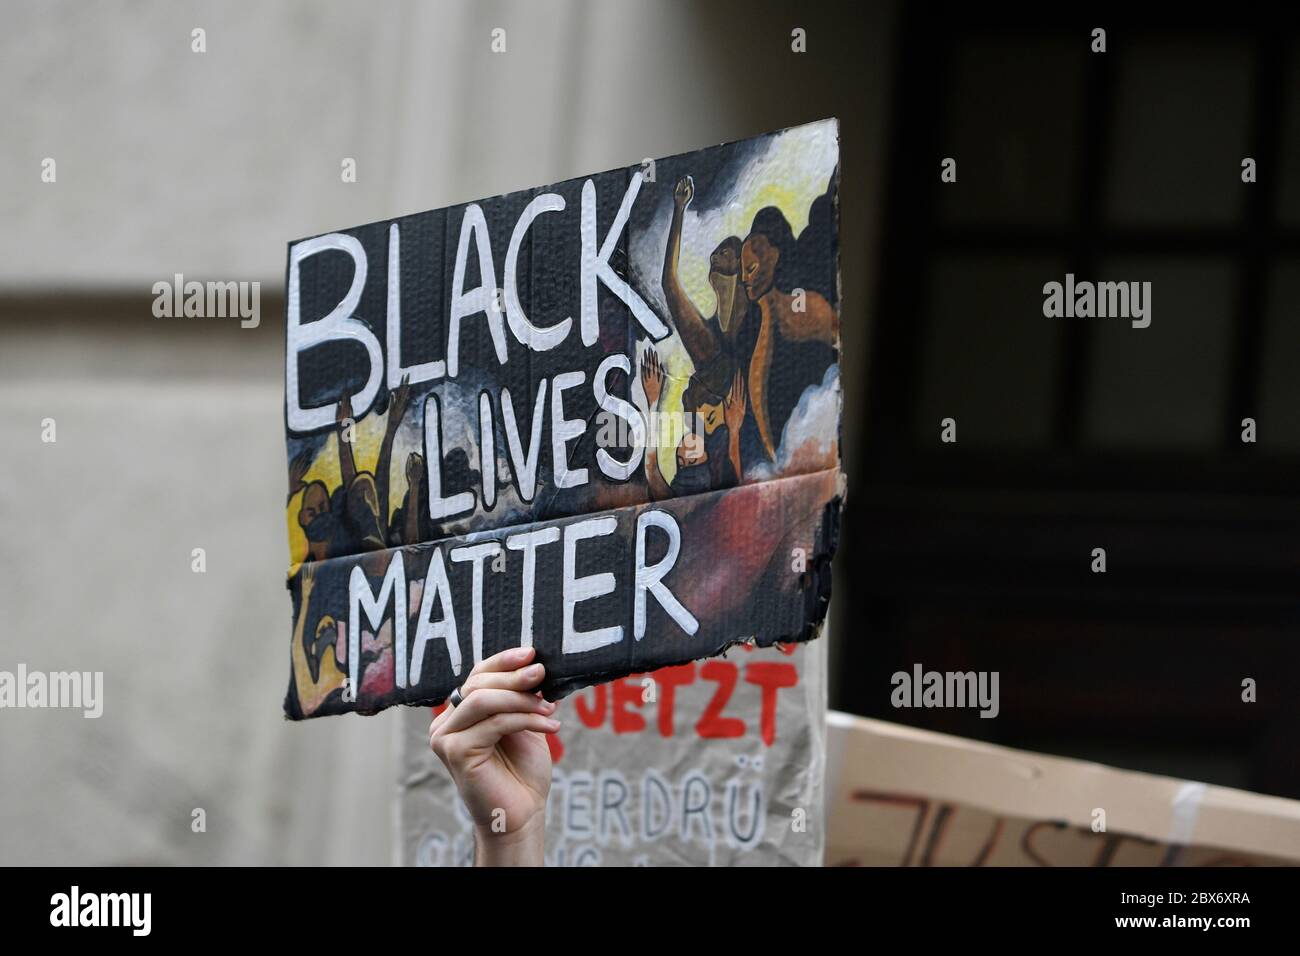 Viena, Austria. 5 de junio de 2020. La manifestación de vidas negras es importante en Viena. Los manifestantes se reunieron frente a la embajada estadounidense y se fueron al centro desde allí. Crédito: Franz PERC / Alamy Live News Foto de stock